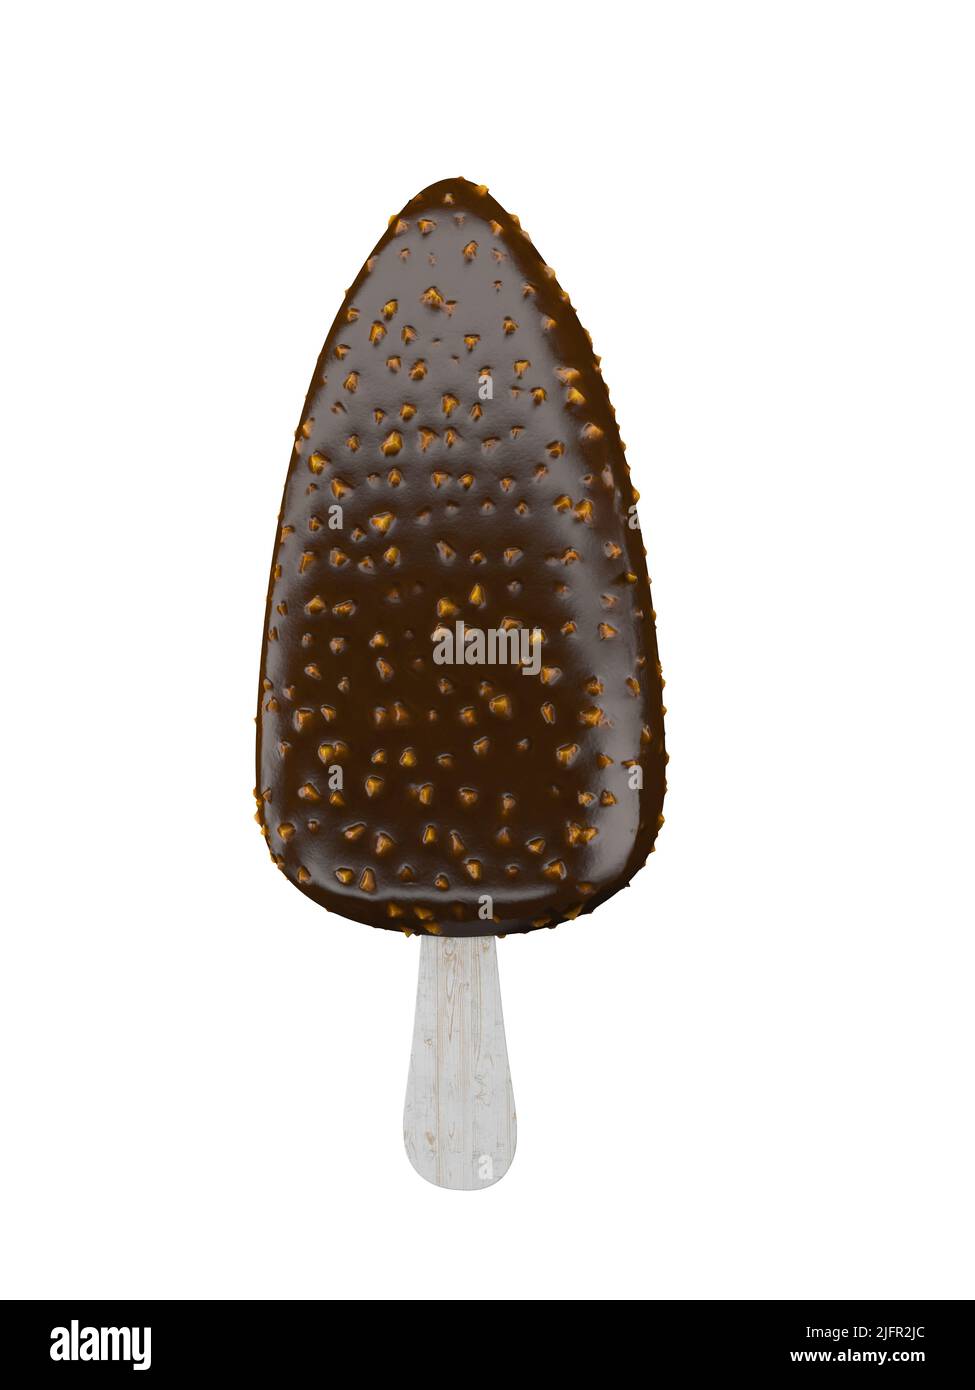 3D illustrazione della barra del gelato al cioccolato con le noci isolate su sfondo bianco, percorso di lavoro o percorso di taglio incluso Foto Stock